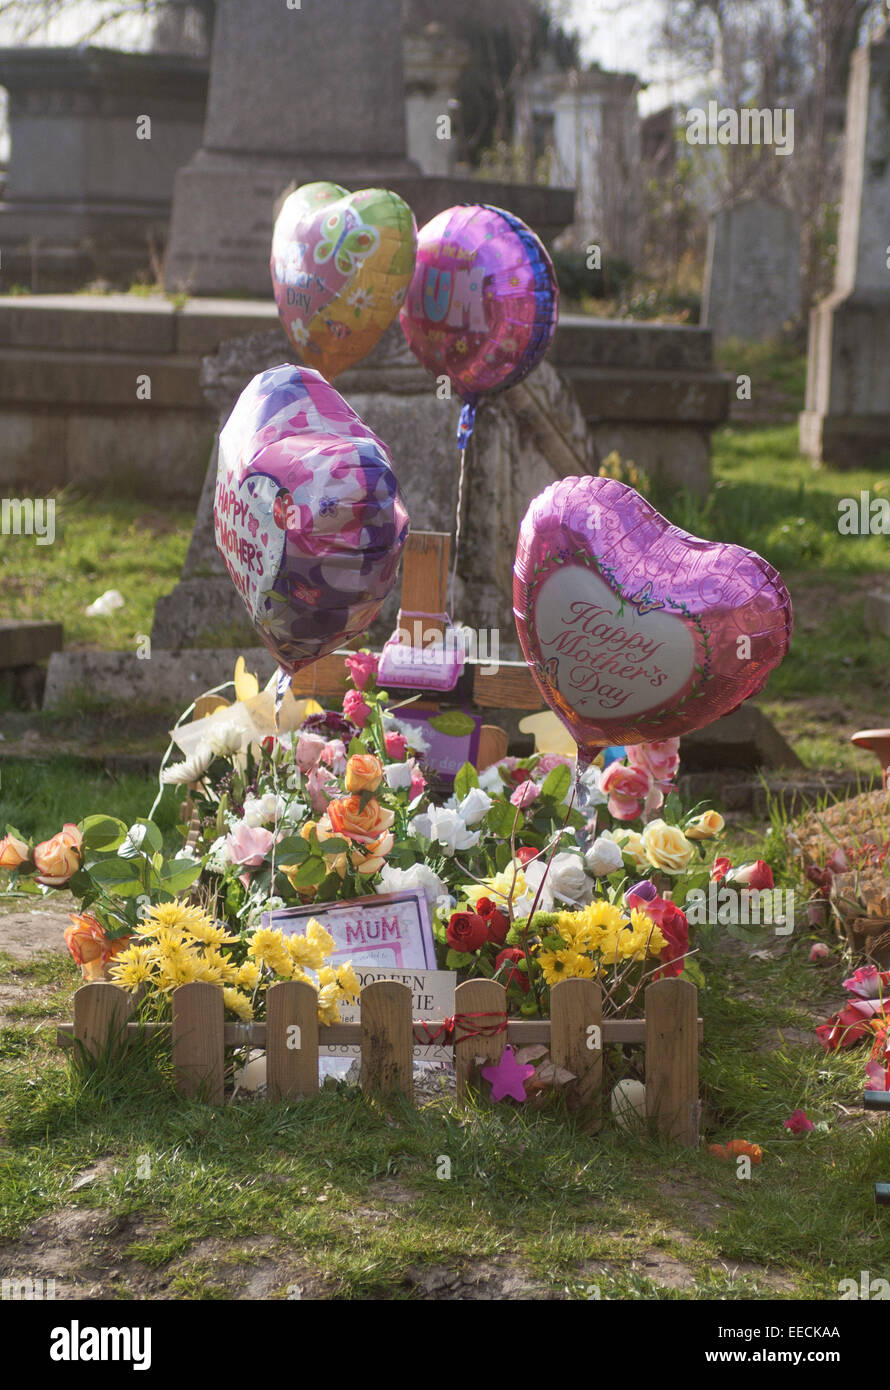 La tombe de la mère de ballon tombe cimetière hommage Banque D'Images